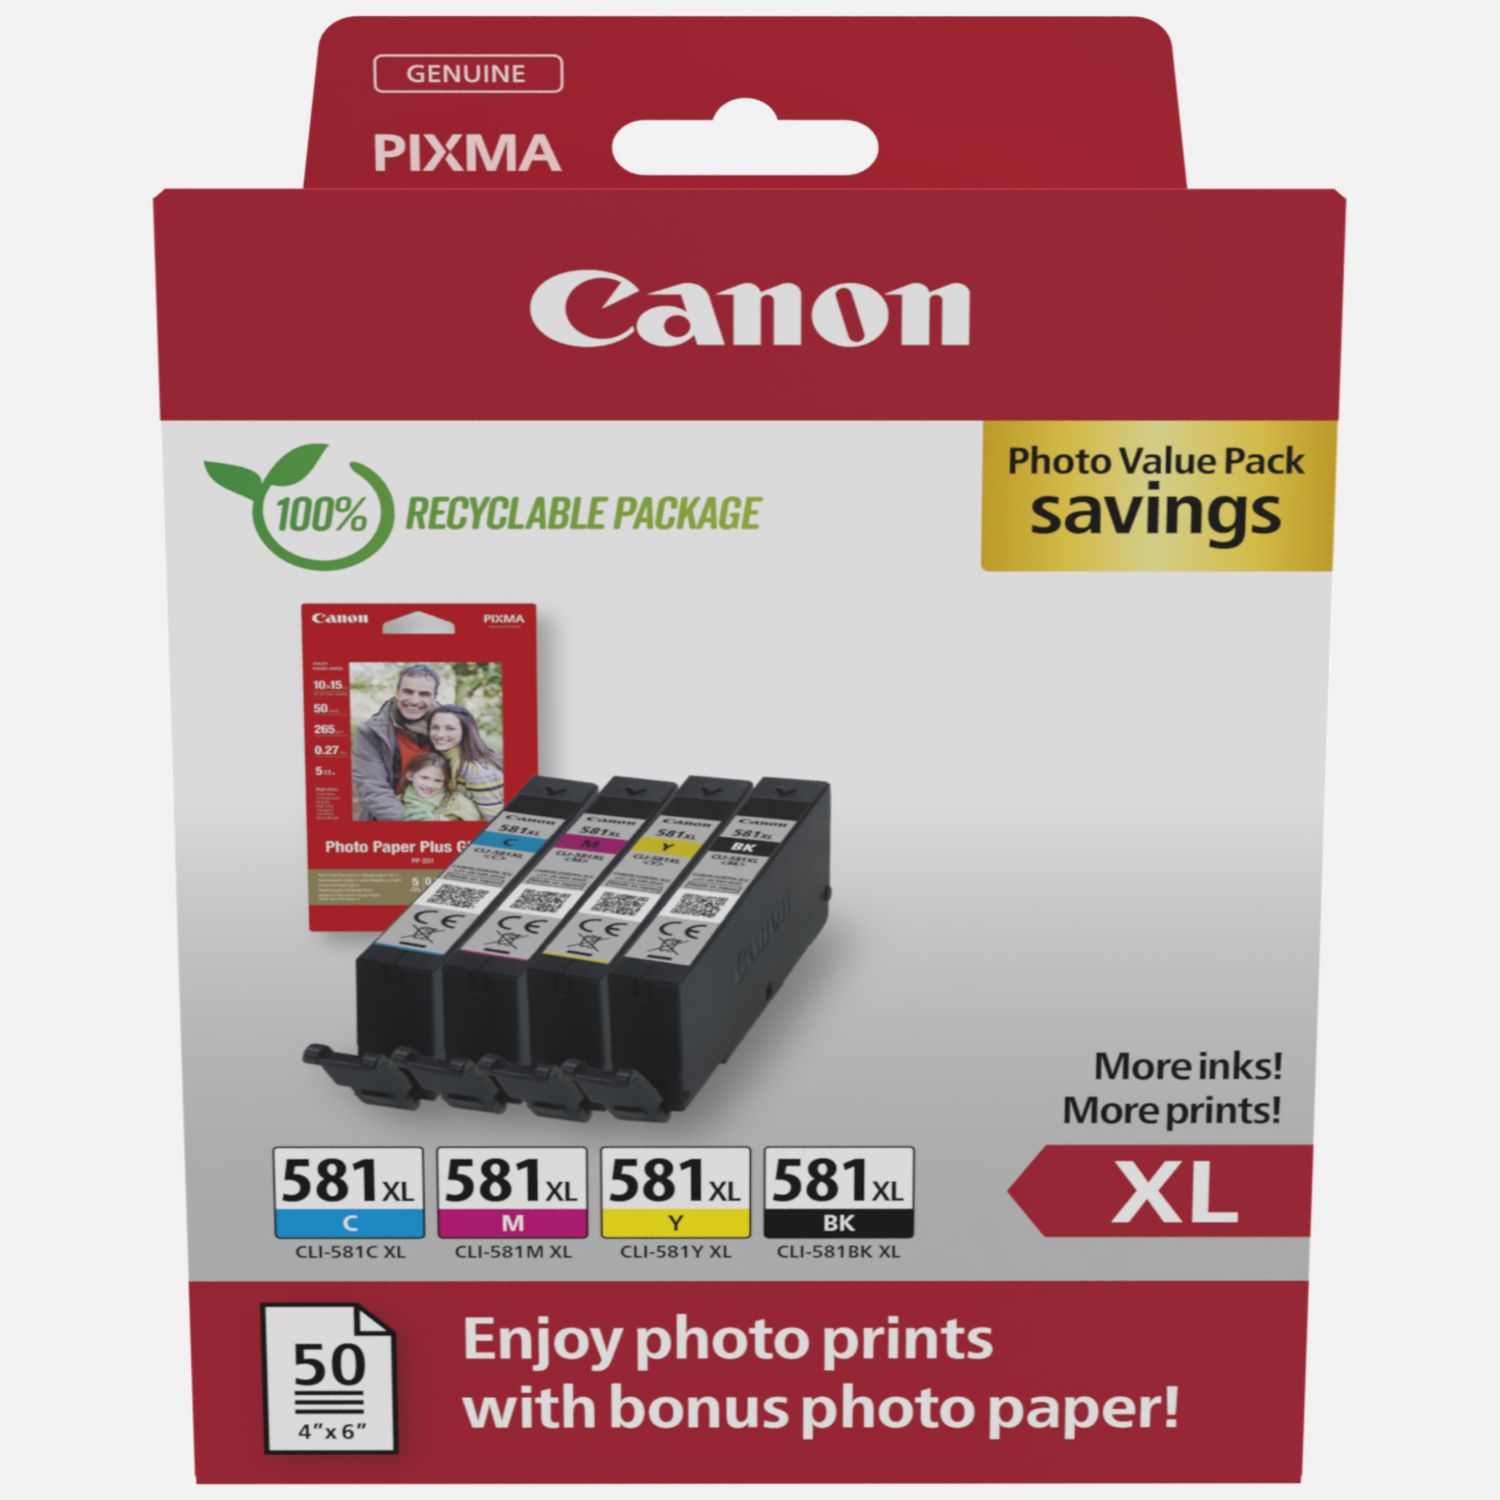 Acheter Marque propre Canon PGI-570PGBK XL Cartouche d'encre Noir